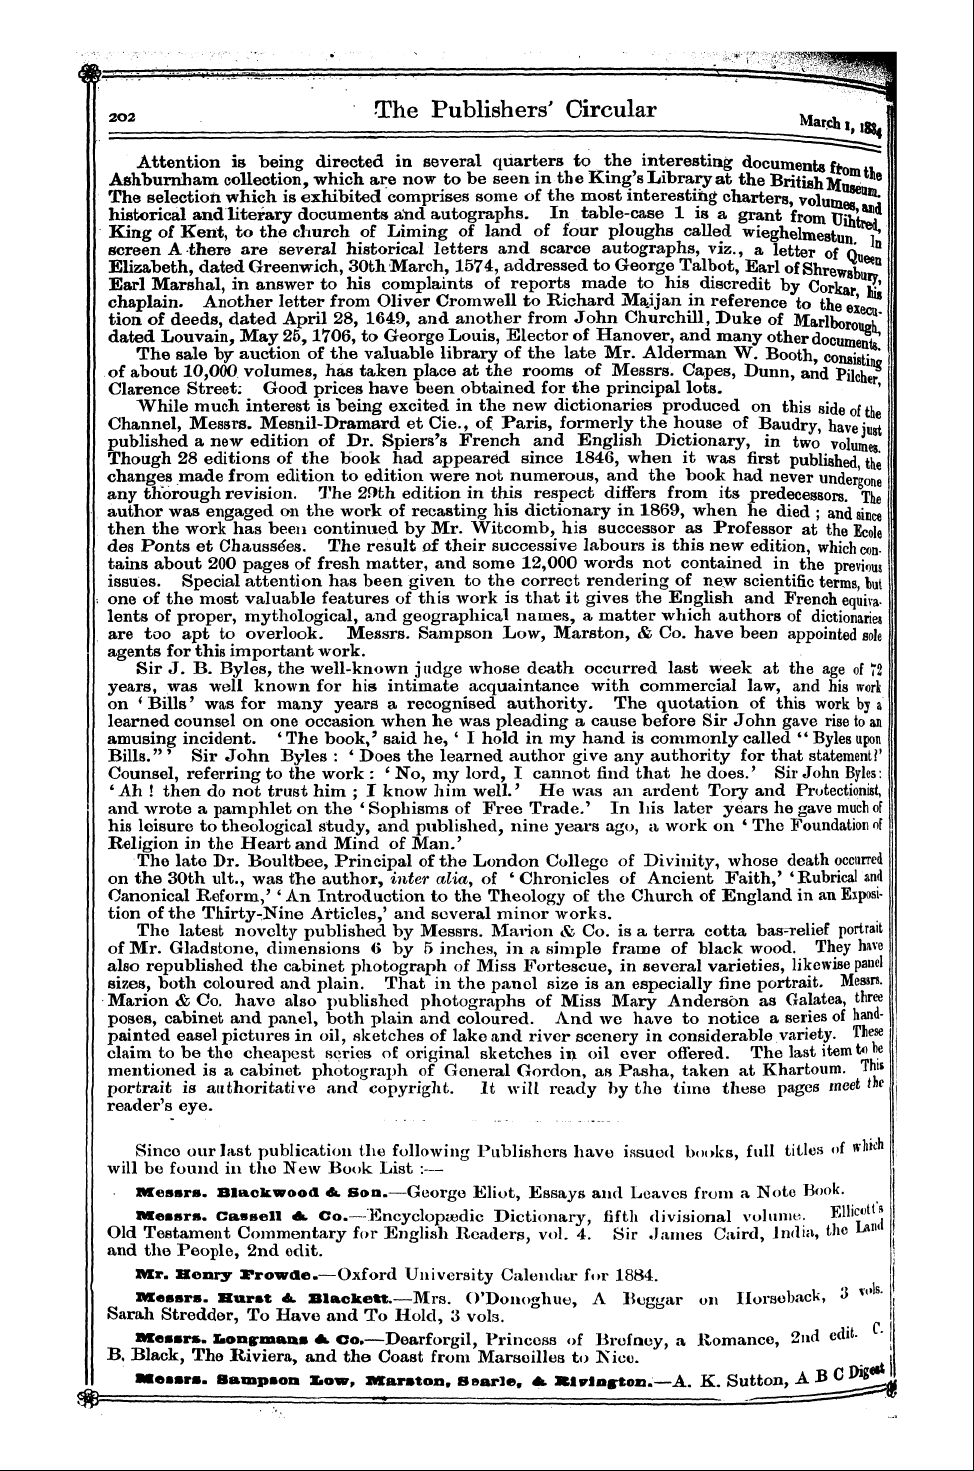 Publishers’ Circular (1880-1890): jS F Y, 1st edition - Ar00600